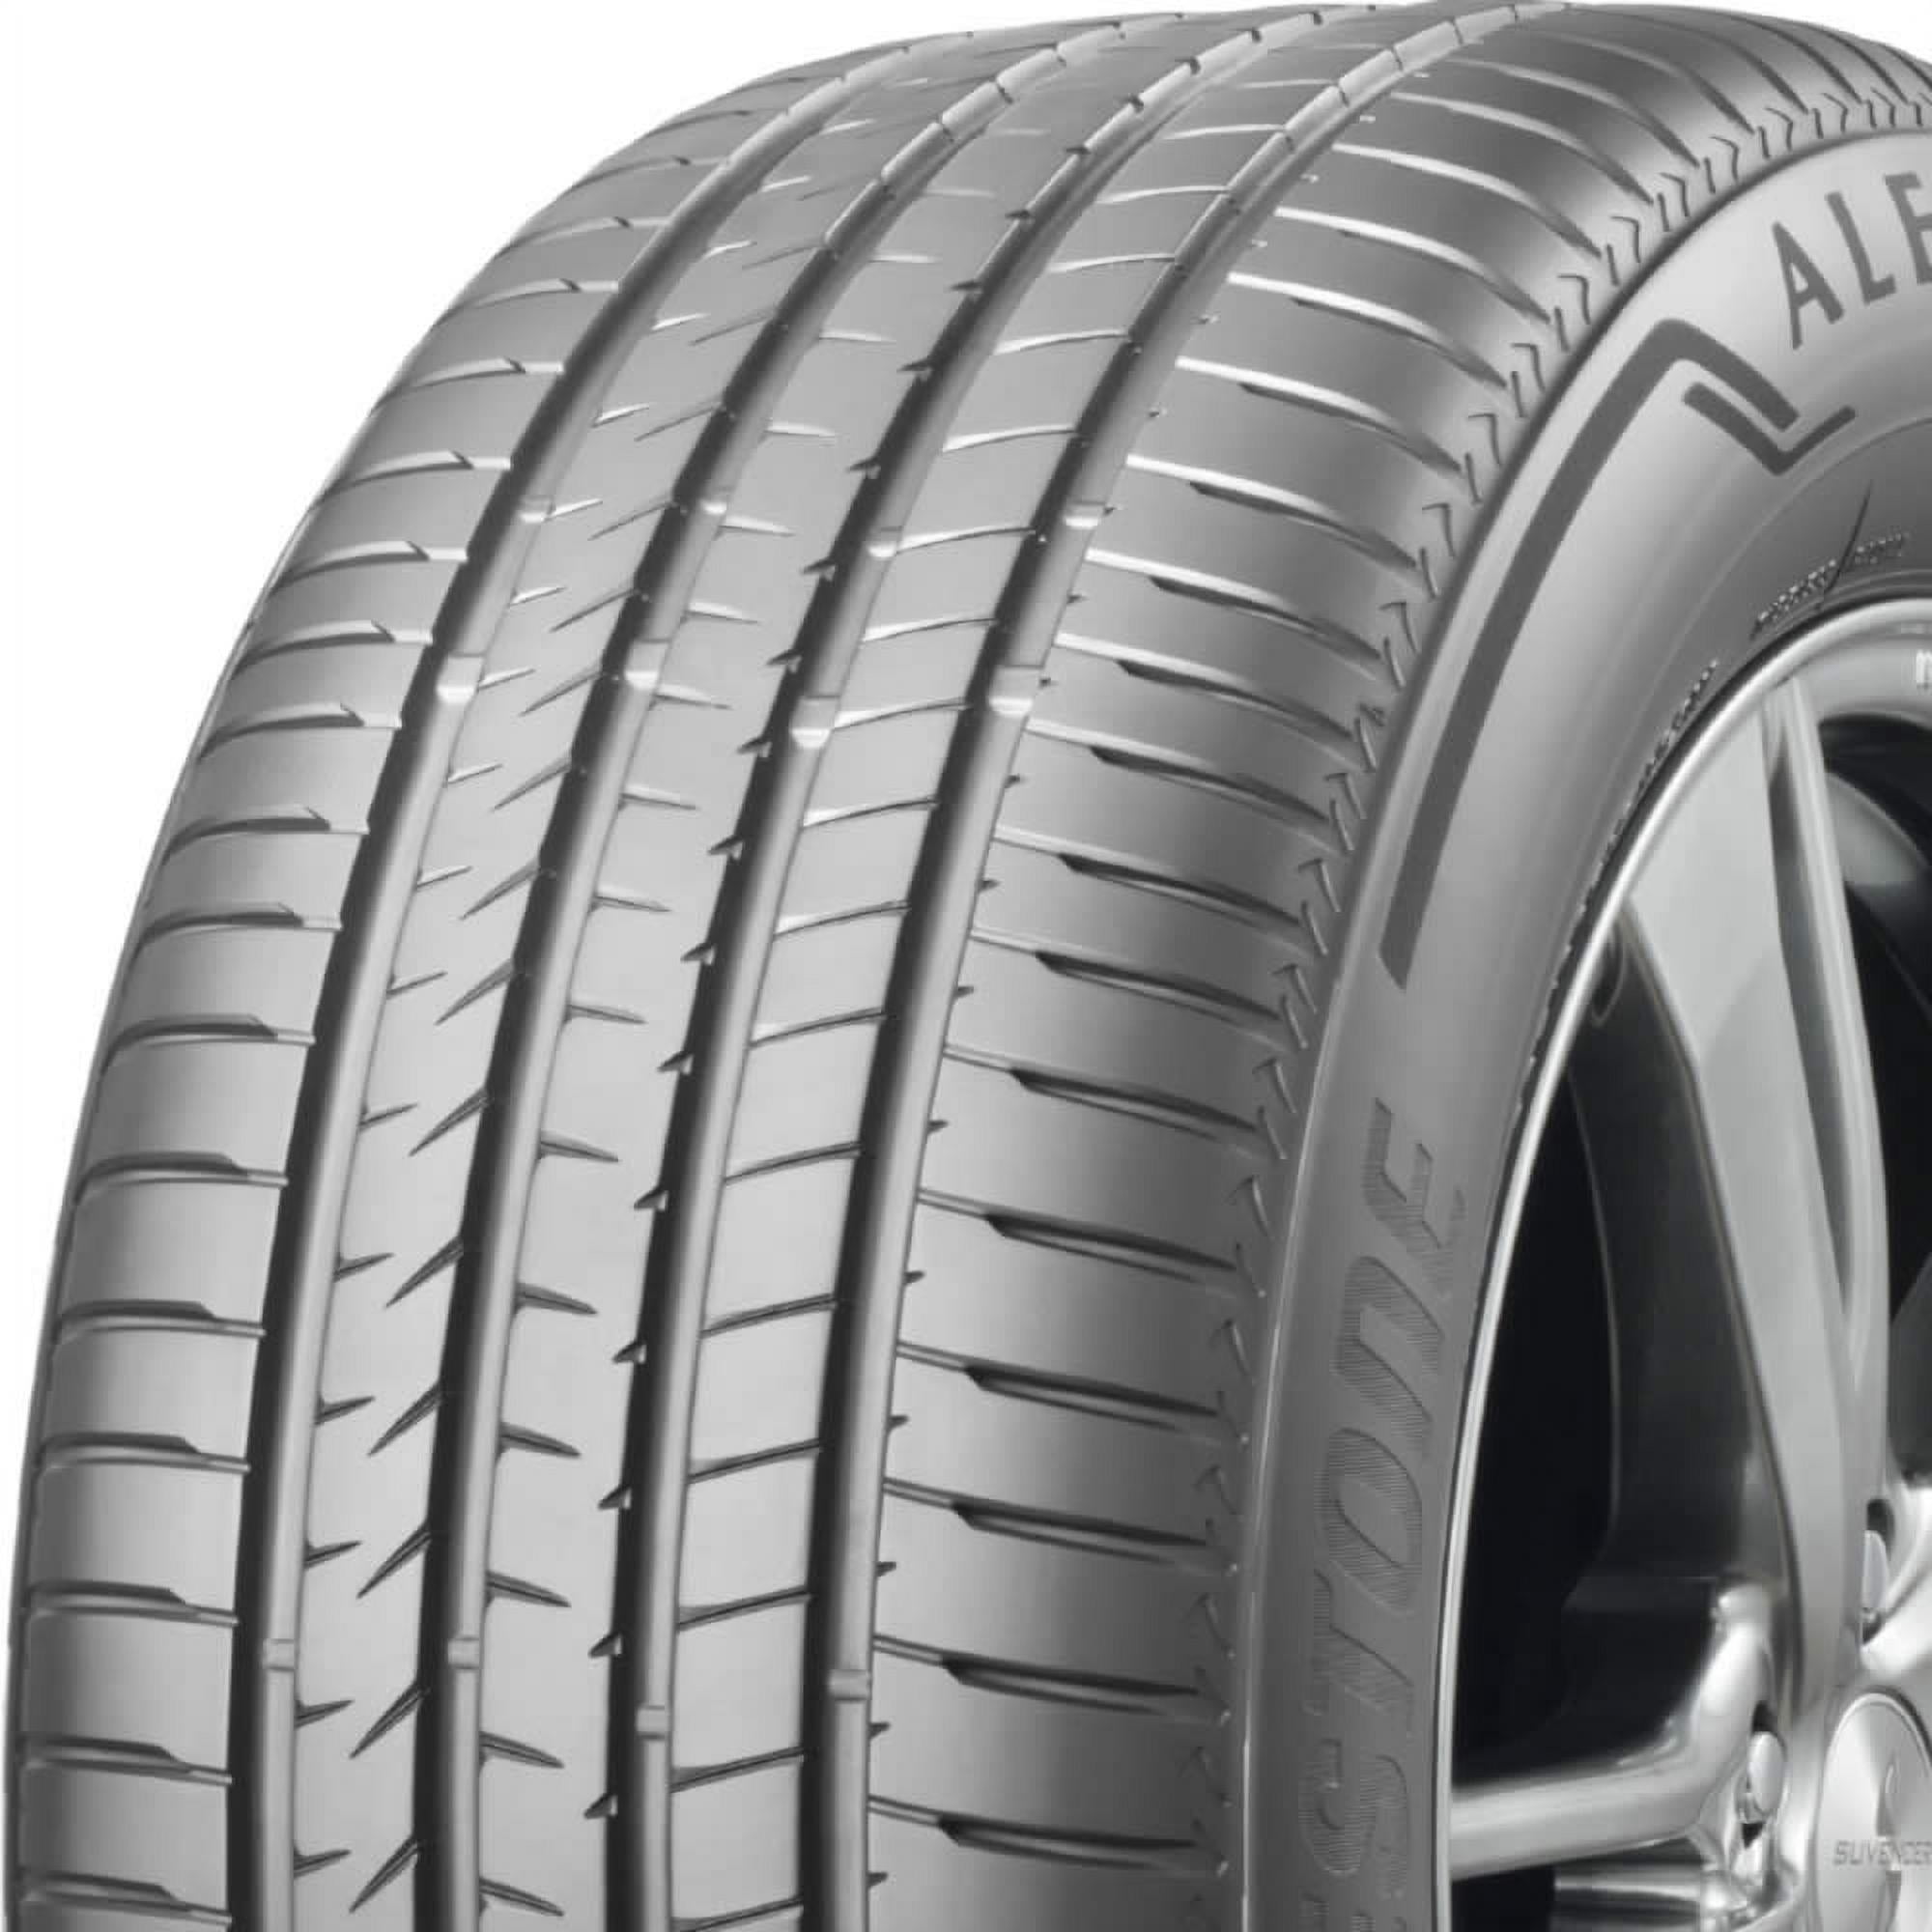 Bridgestone Alenza 001 235/50R19 99W High Performance Tire